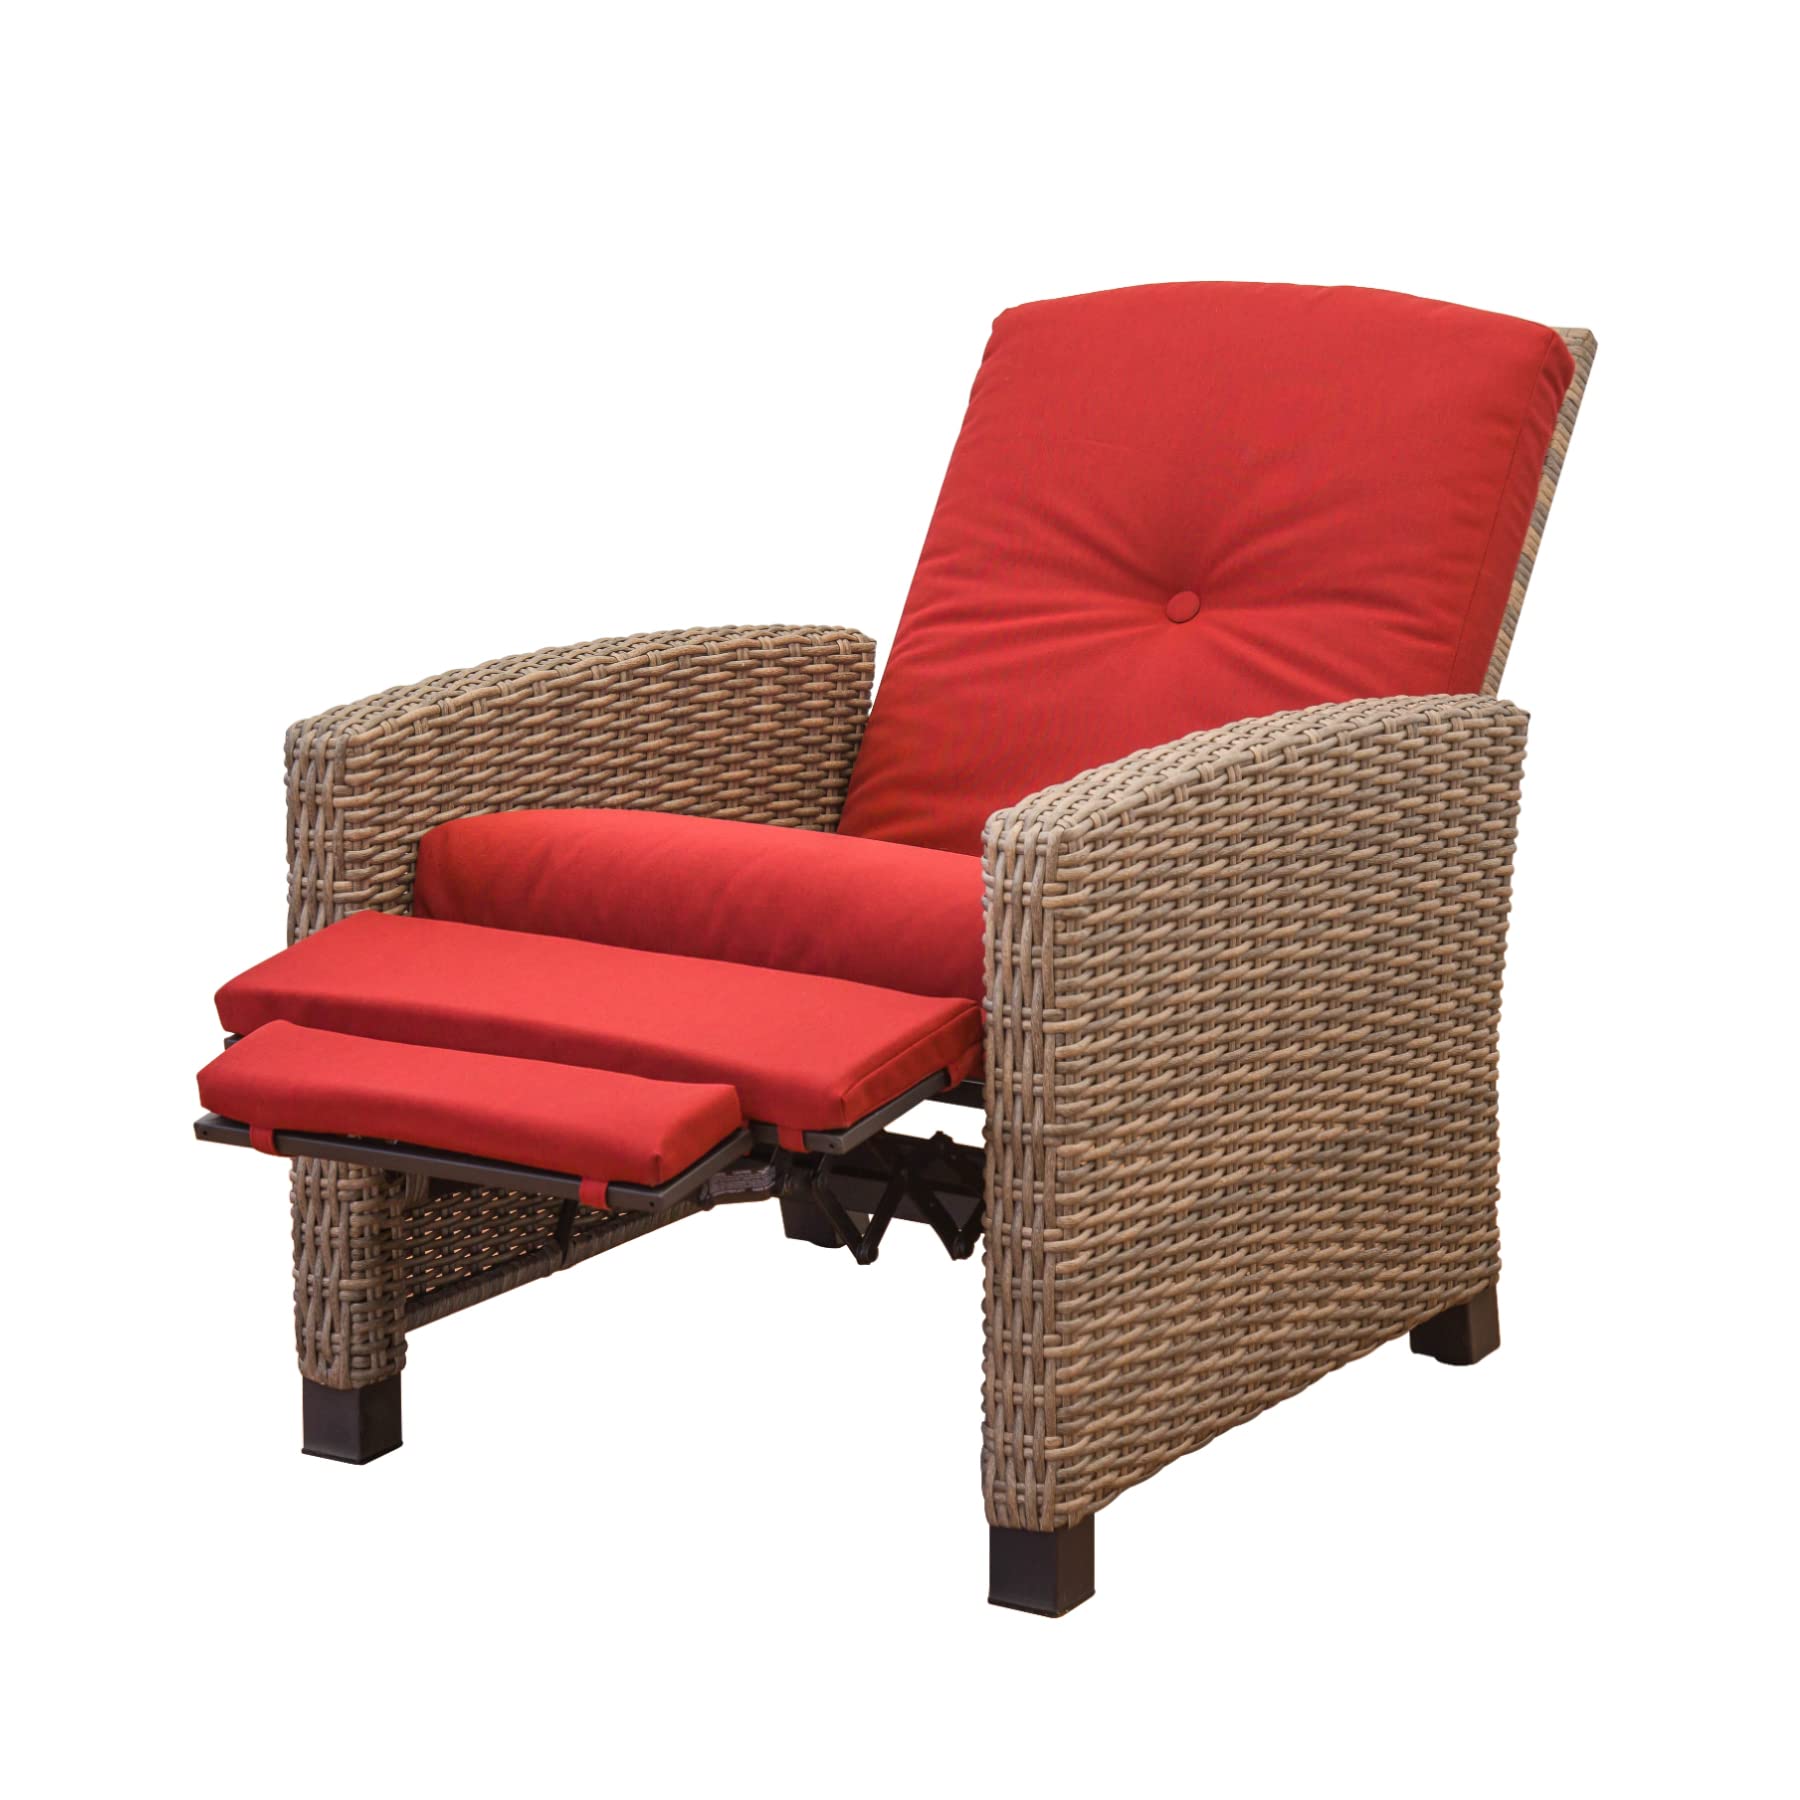 Domi Indoor & Outdoor Recliner, All-Weather Wicker Reclining Patio Chair - image 1 of 8